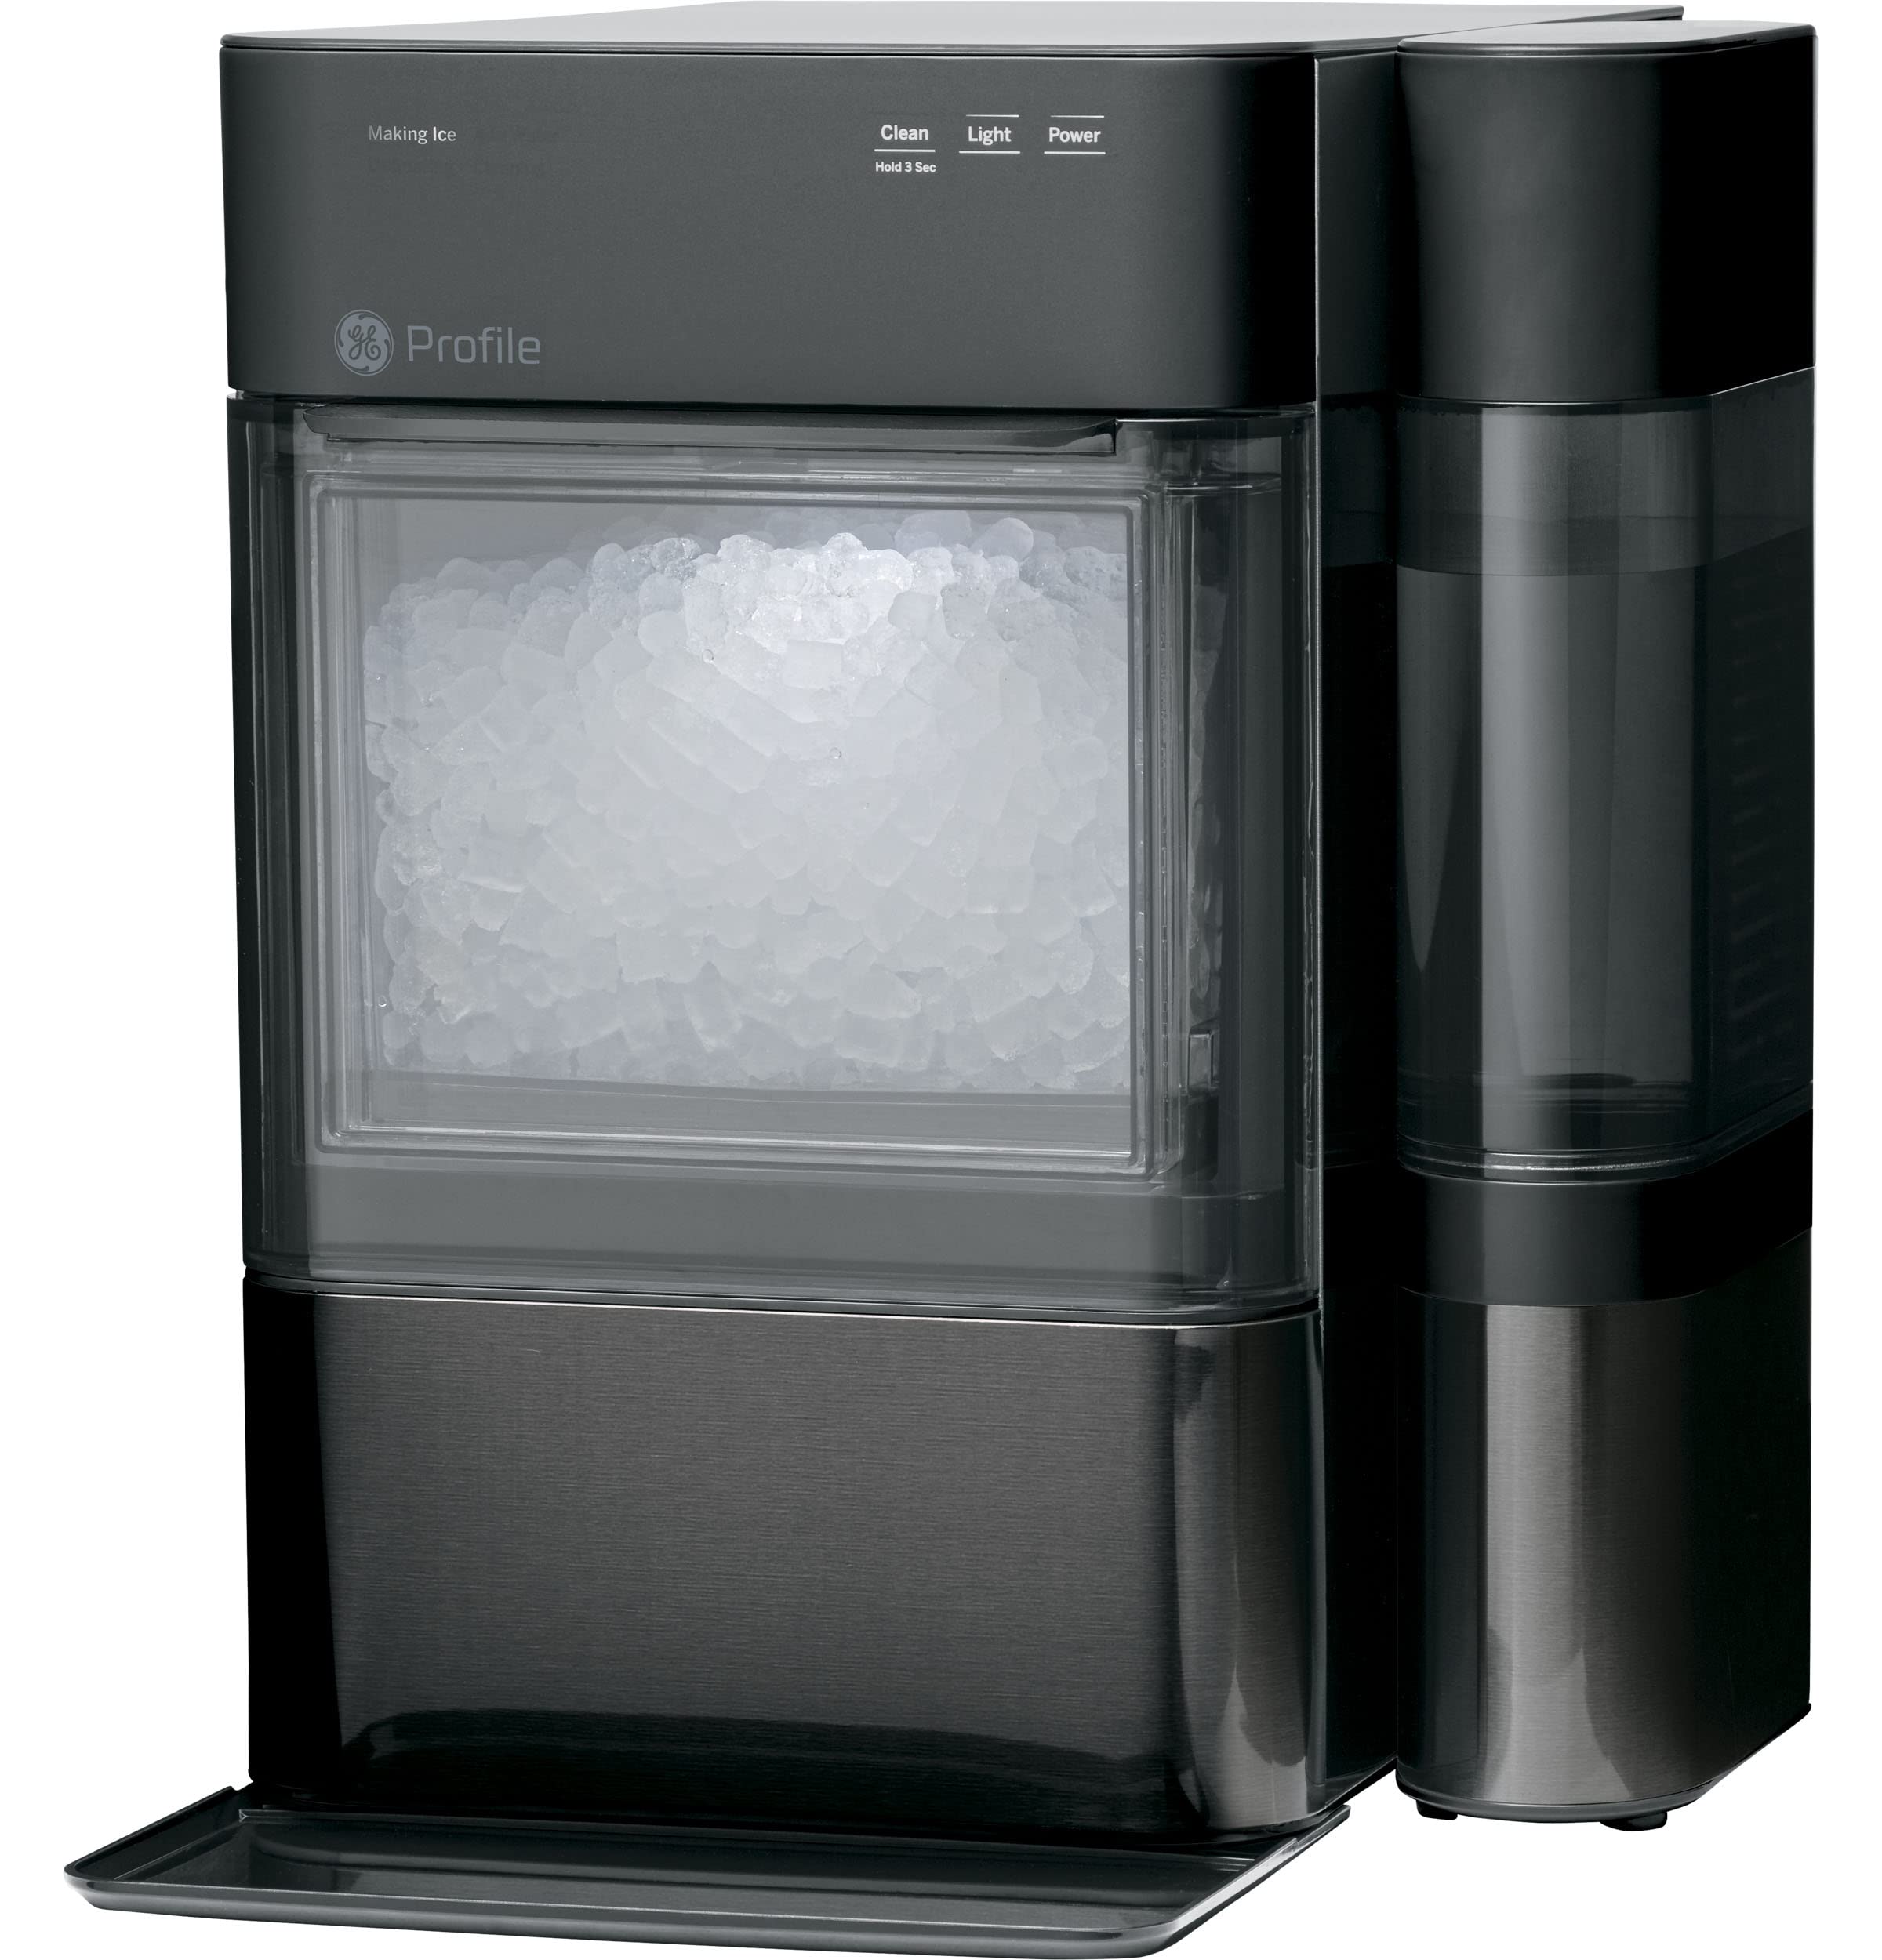 GE Perfil Opal 2.0 | Máquina para hacer hielo Nugt de encimera con tanque lateral | Máquina de hielo con conectividad WiFi | Esenciales de cocina para el hogar intelinte | Negro inoxidable